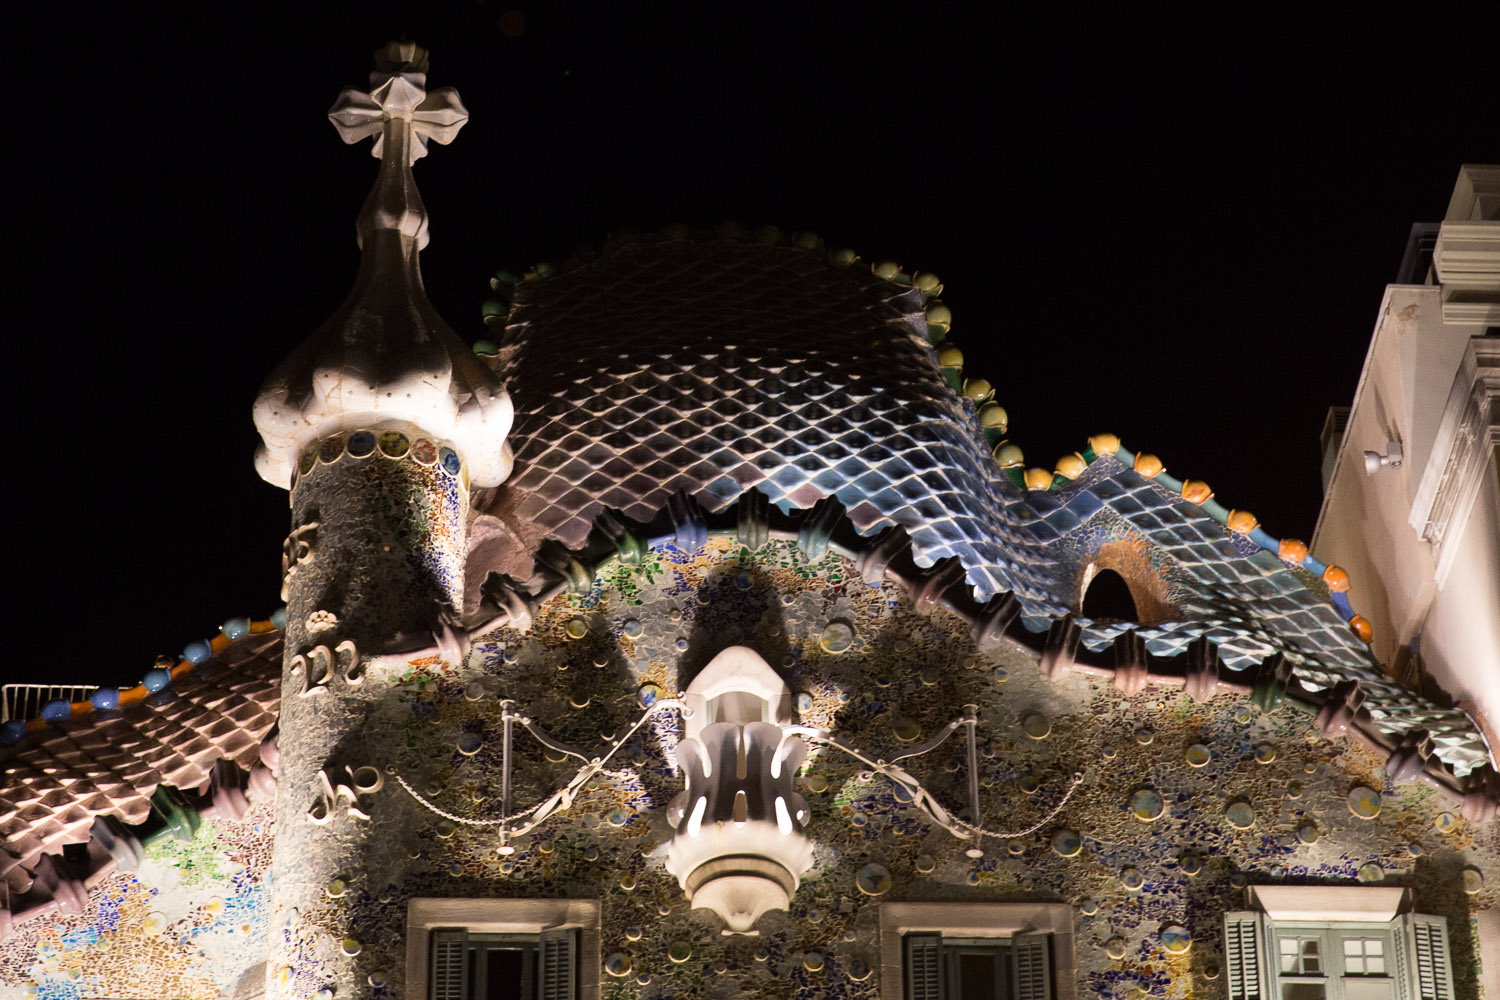 Bóveda de la fachada de la Casa Batlló, Barcelona, España